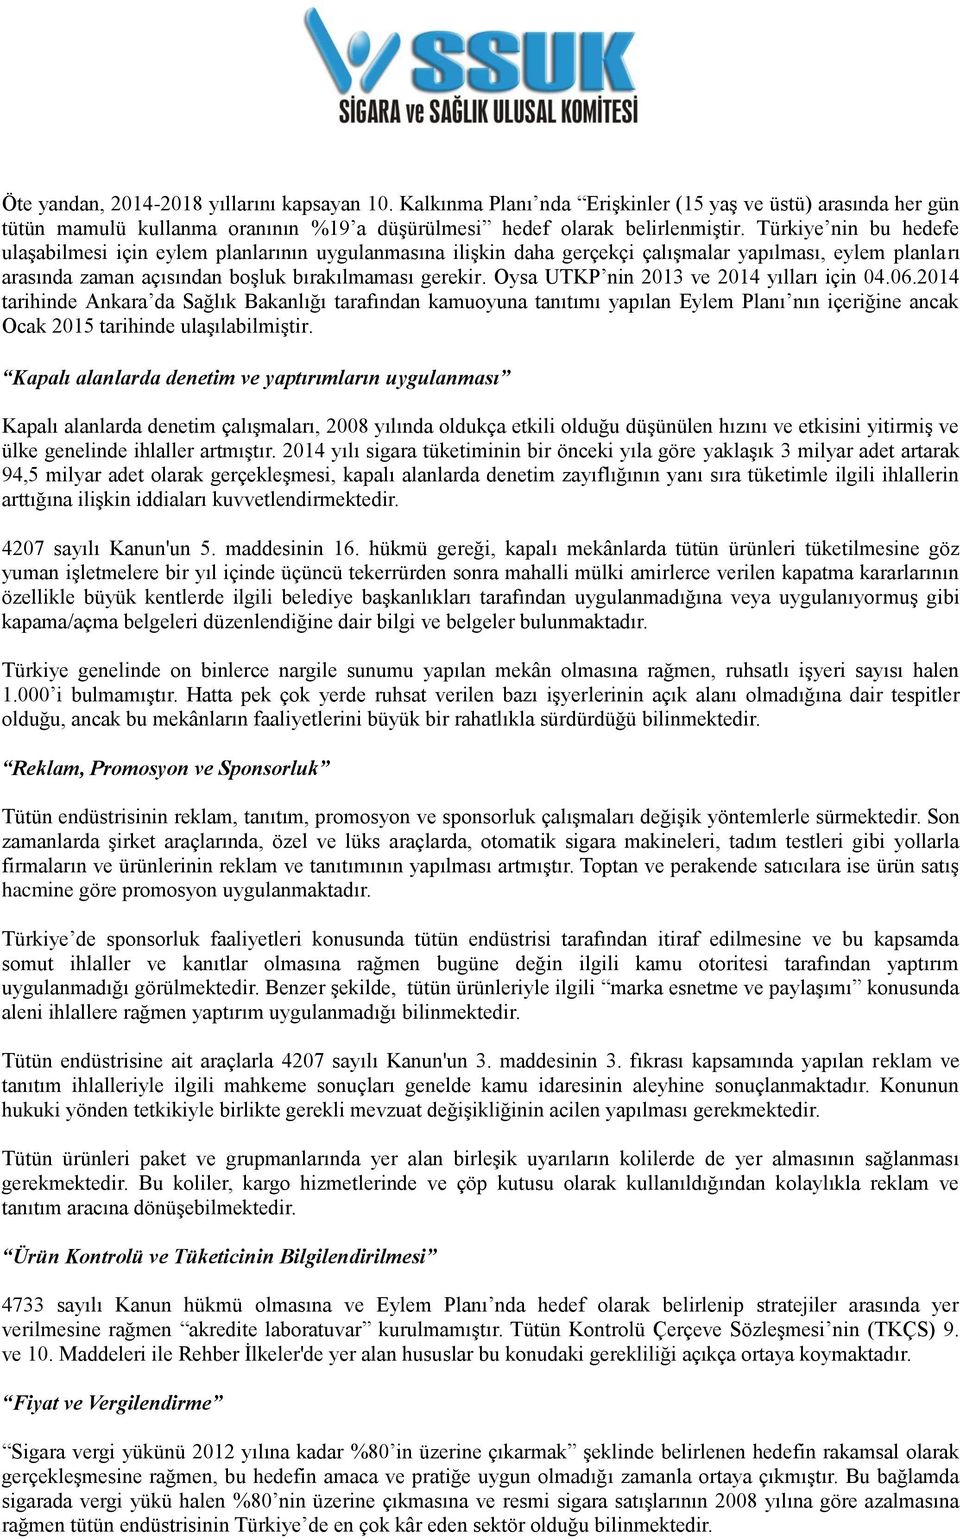 Oysa UTKP nin 2013 ve 2014 yılları için 04.06.2014 tarihinde Ankara da Sağlık Bakanlığı tarafından kamuoyuna tanıtımı yapılan Eylem Planı nın içeriğine ancak Ocak 2015 tarihinde ulaşılabilmiştir.